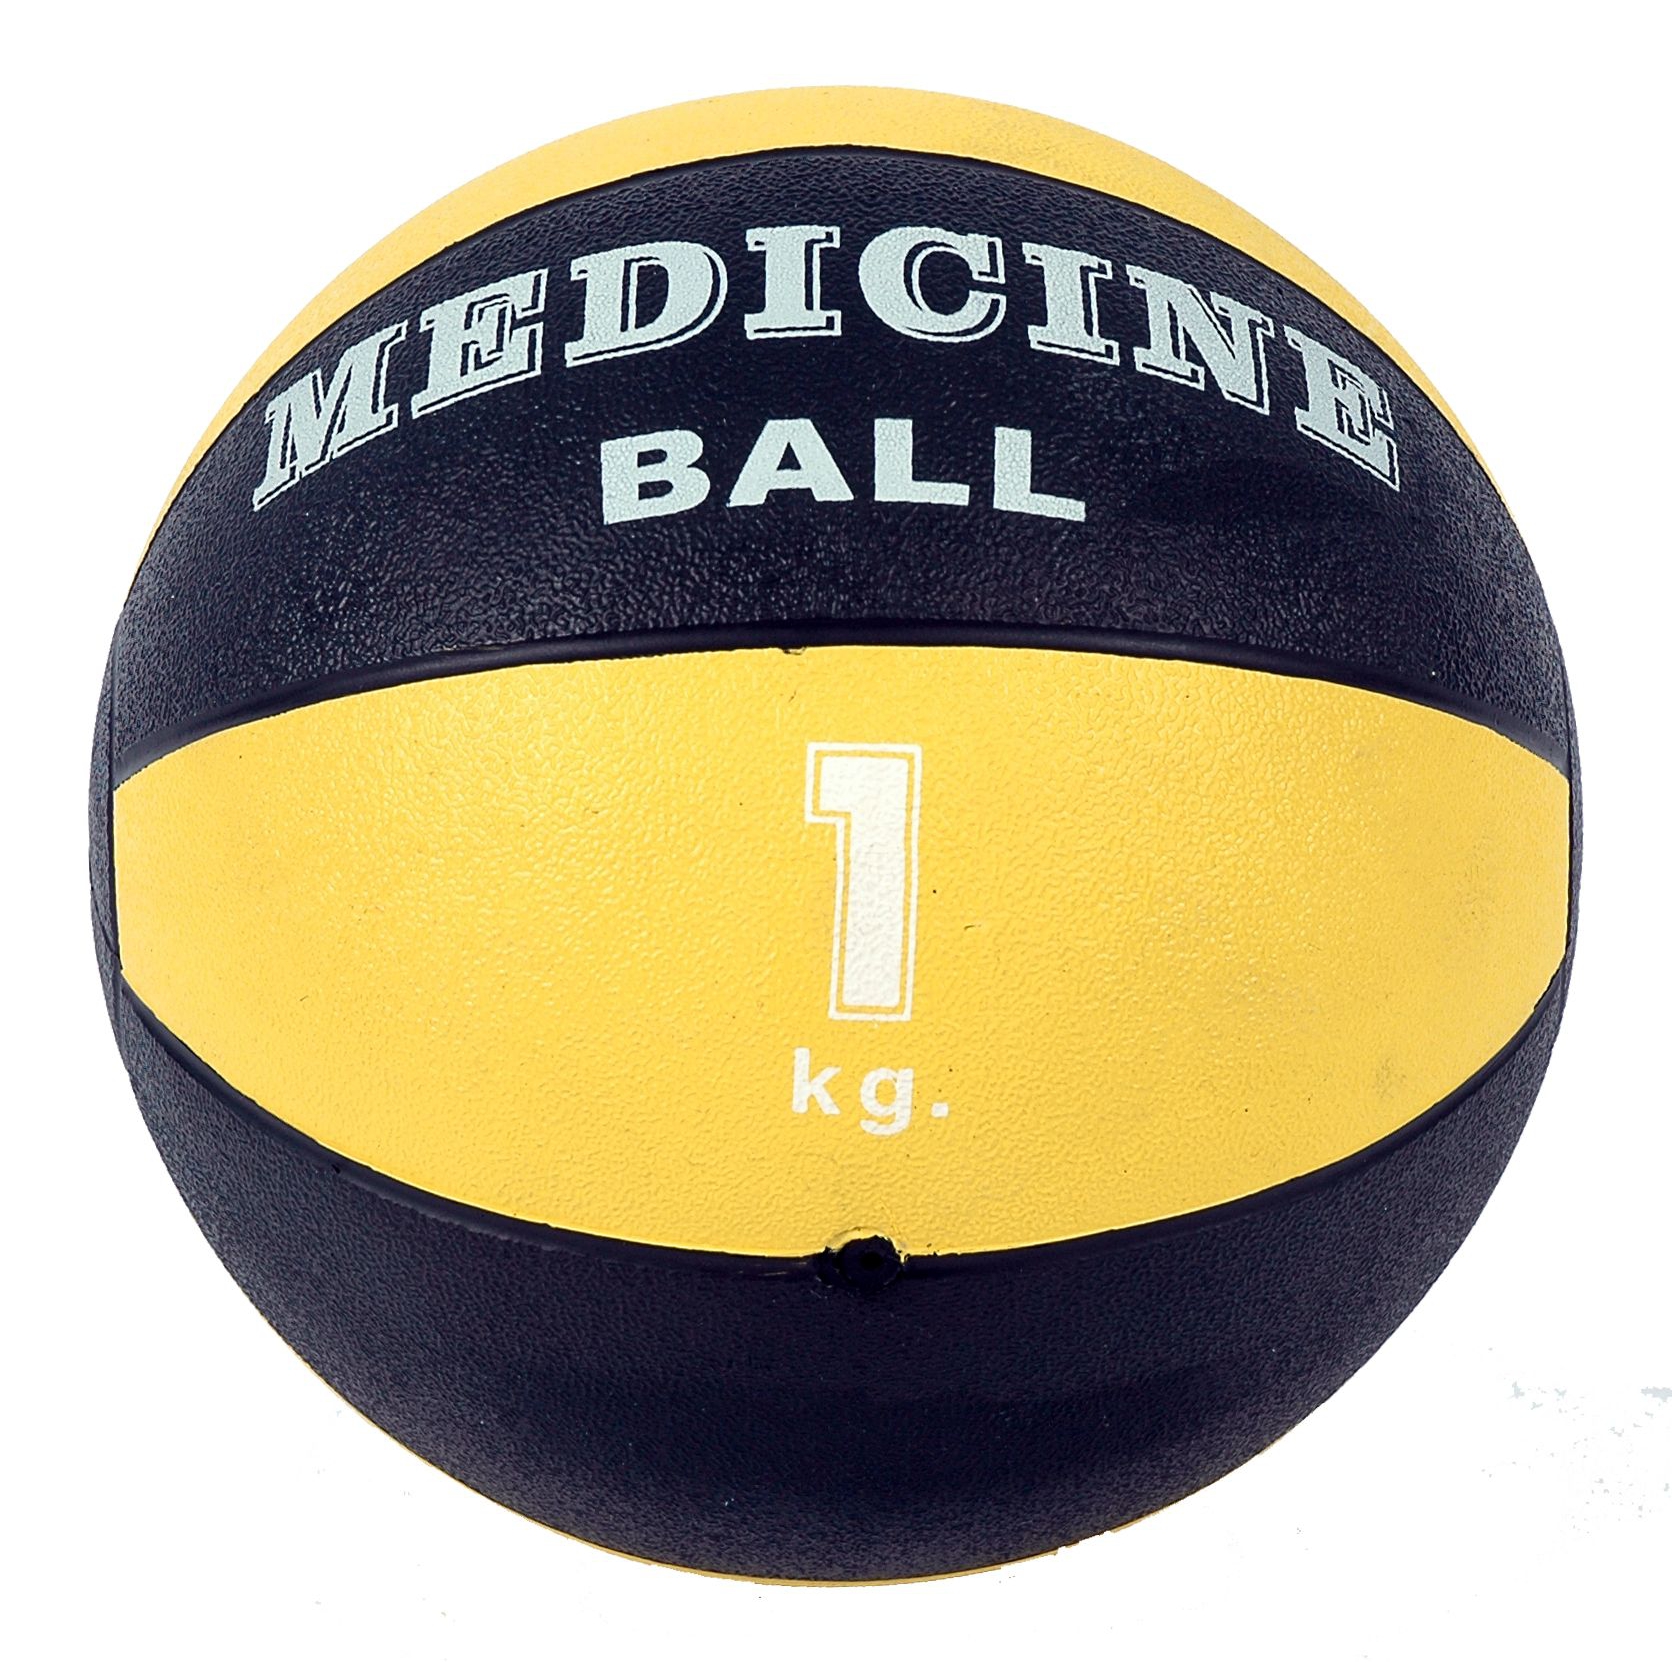 Medecine-ball - Mambo - 1 kg